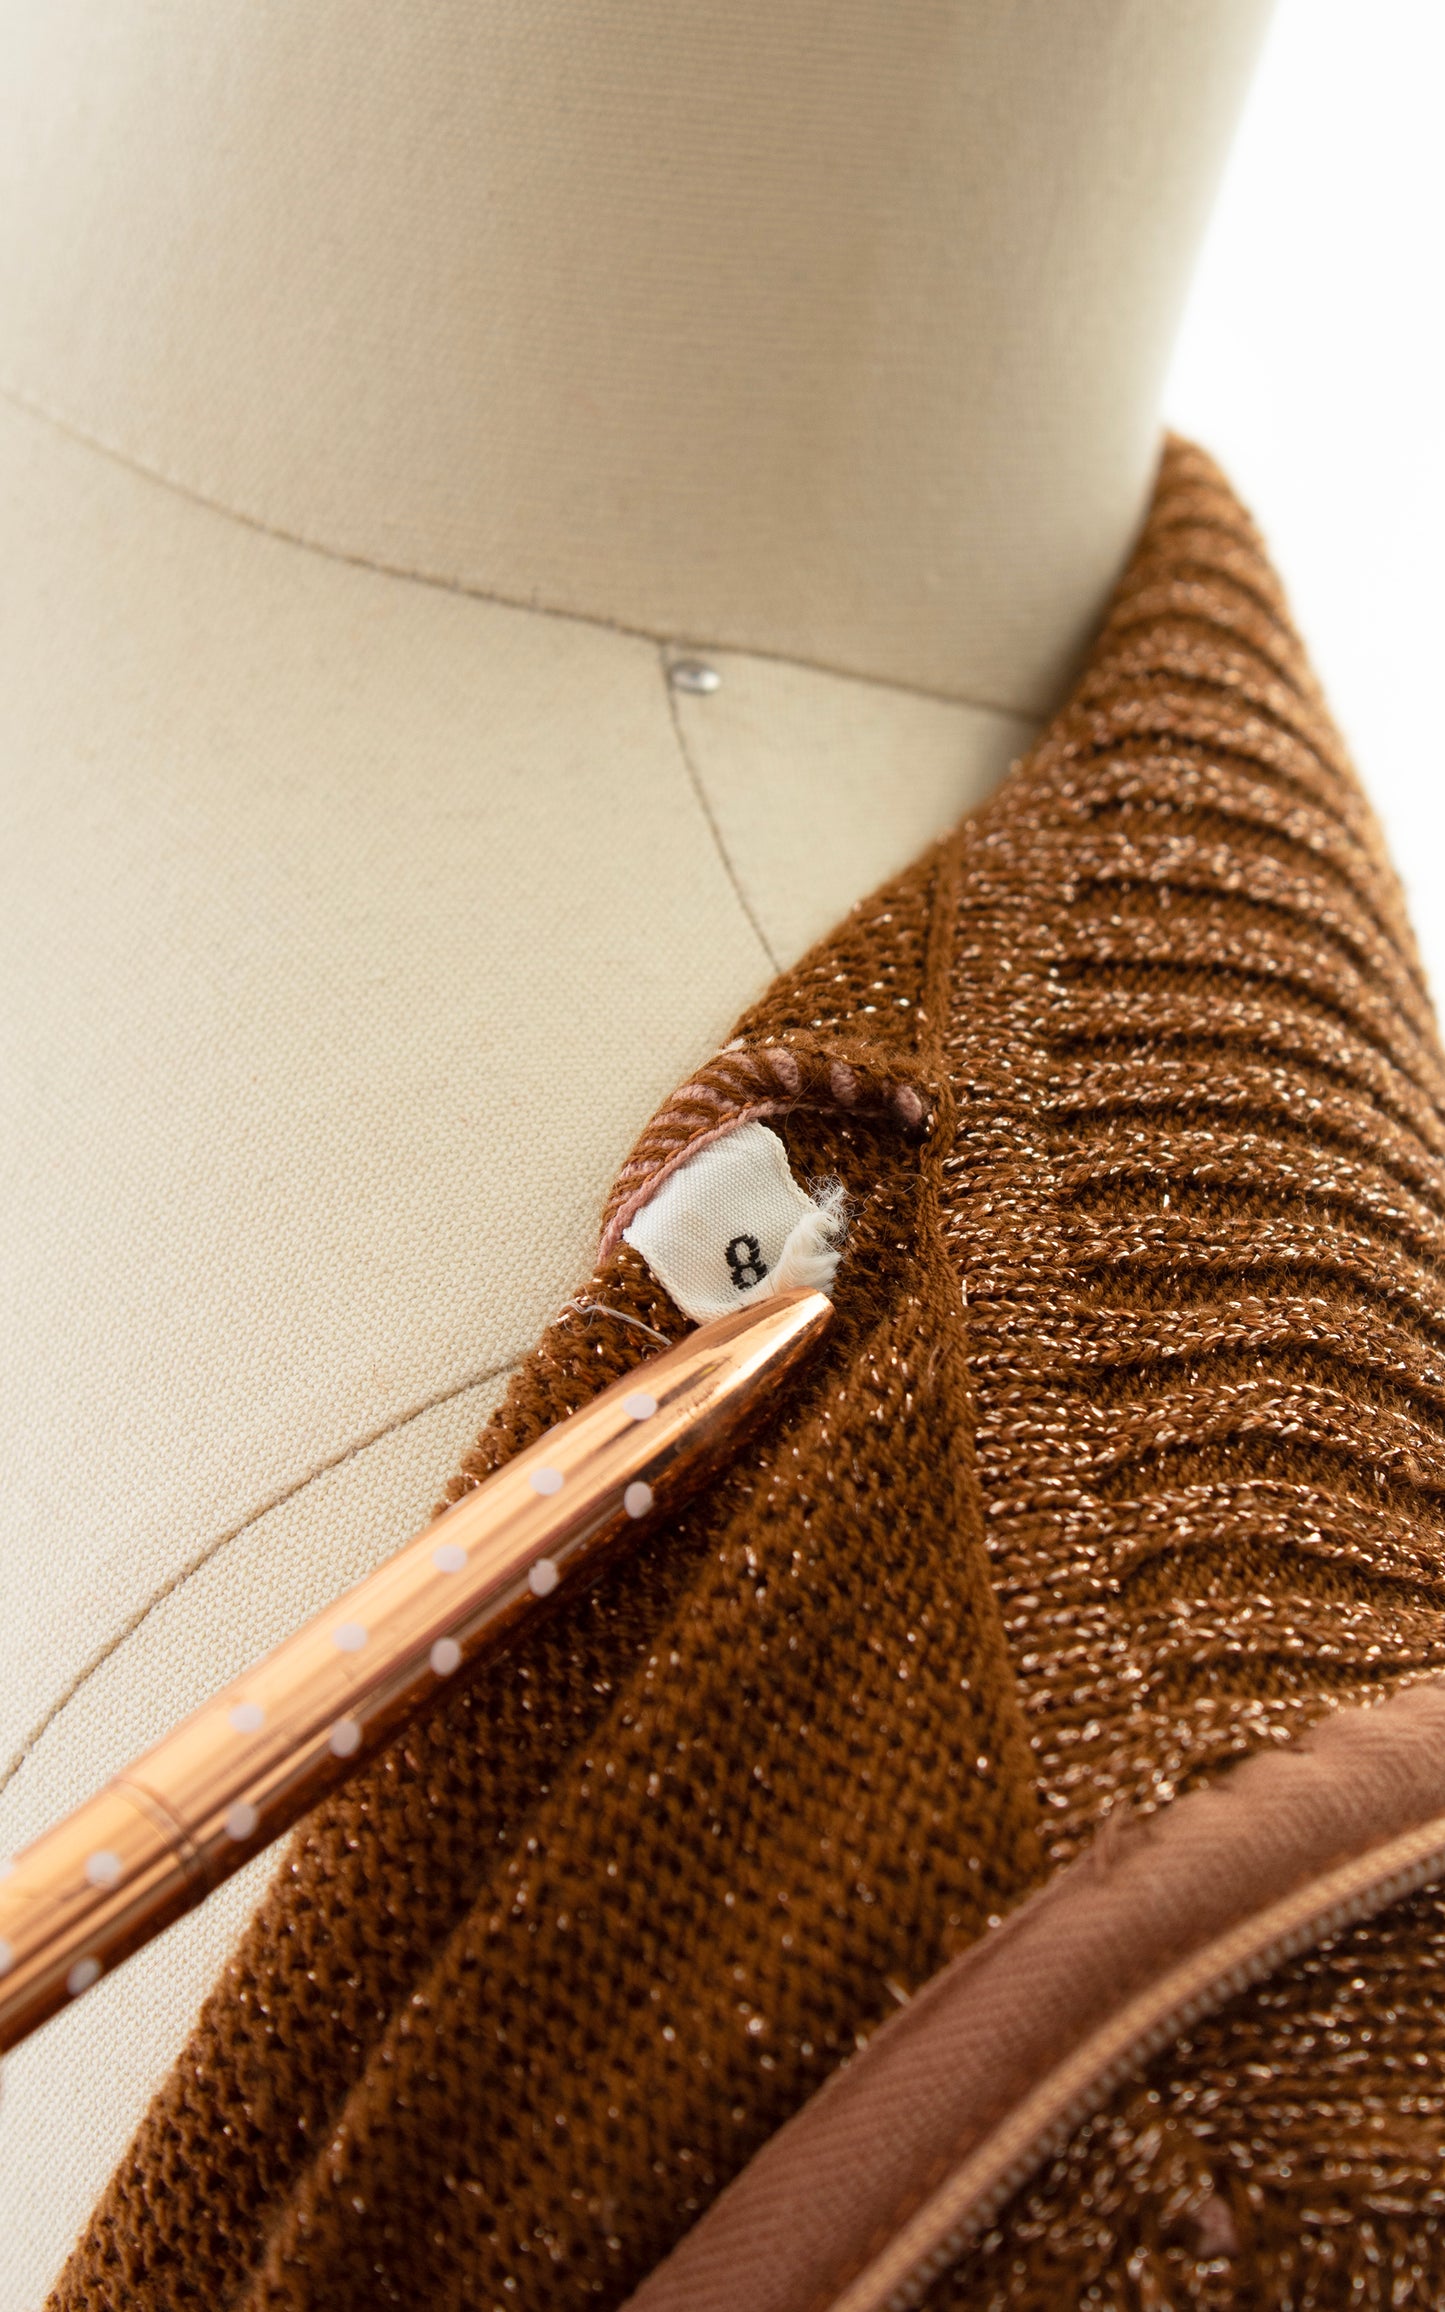 1970s WENJILLI Metallic Copper Sweater Dress | x-small/small/medium